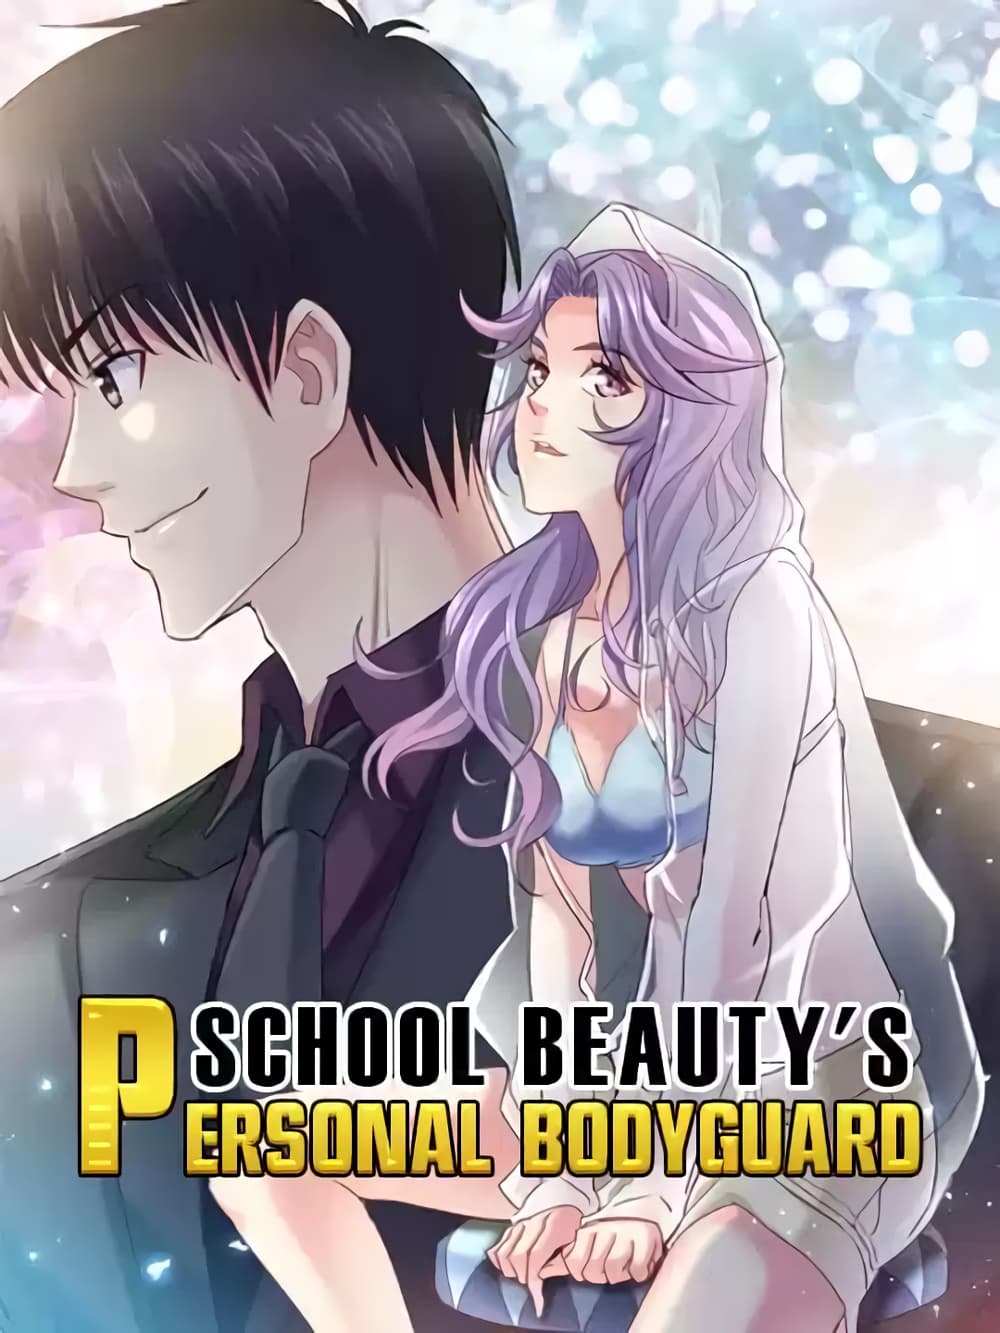 School Beauty's Bodyguard 292 (1)